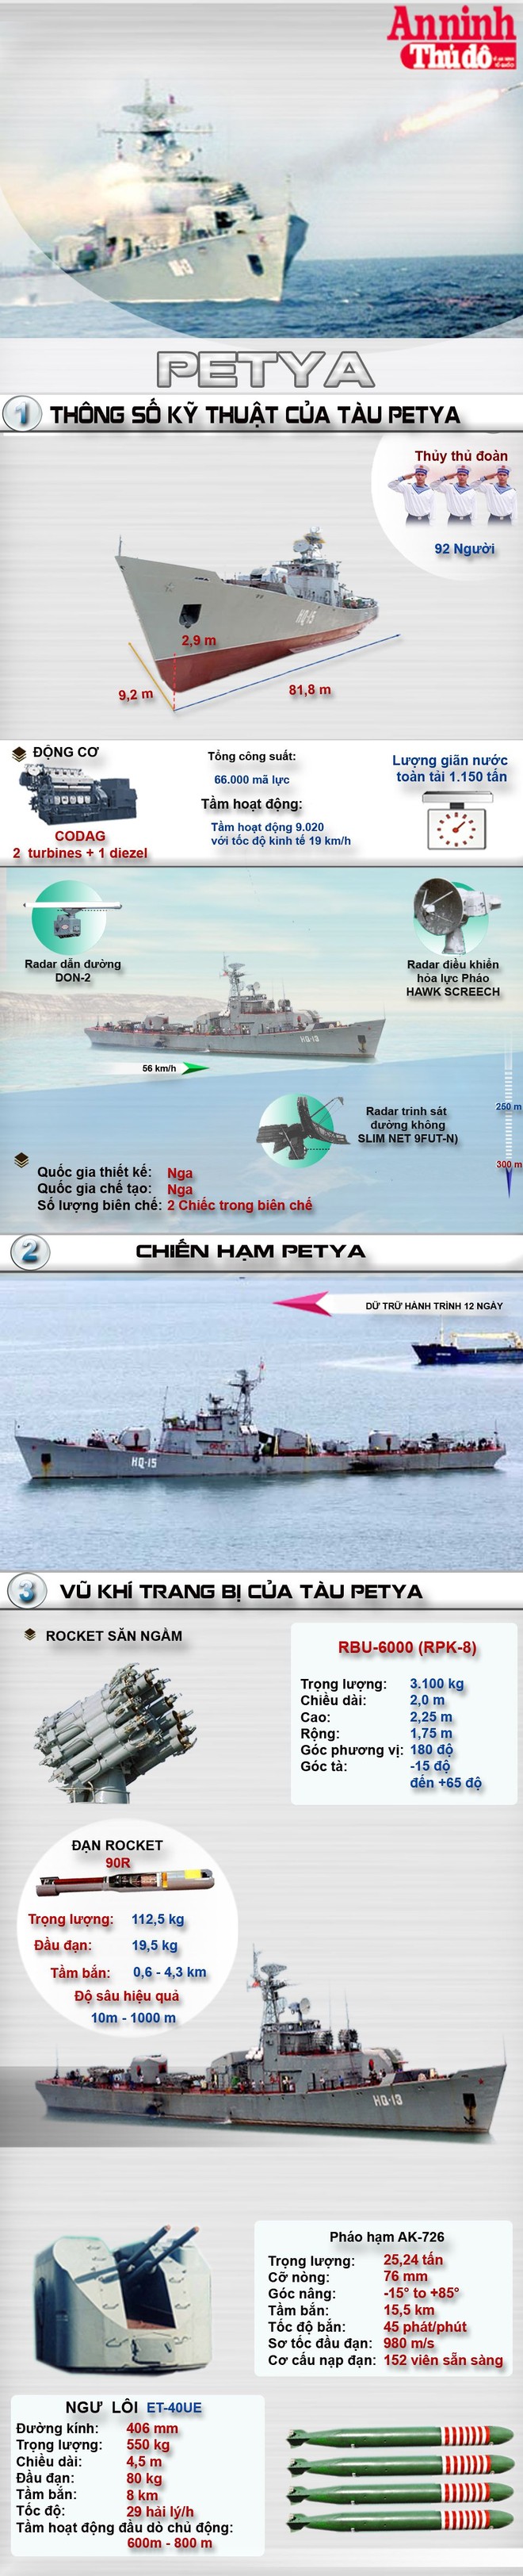 [Infographic] Petya-Chiến hạm săn ngầm mạnh nhất của Việt Nam ảnh 1